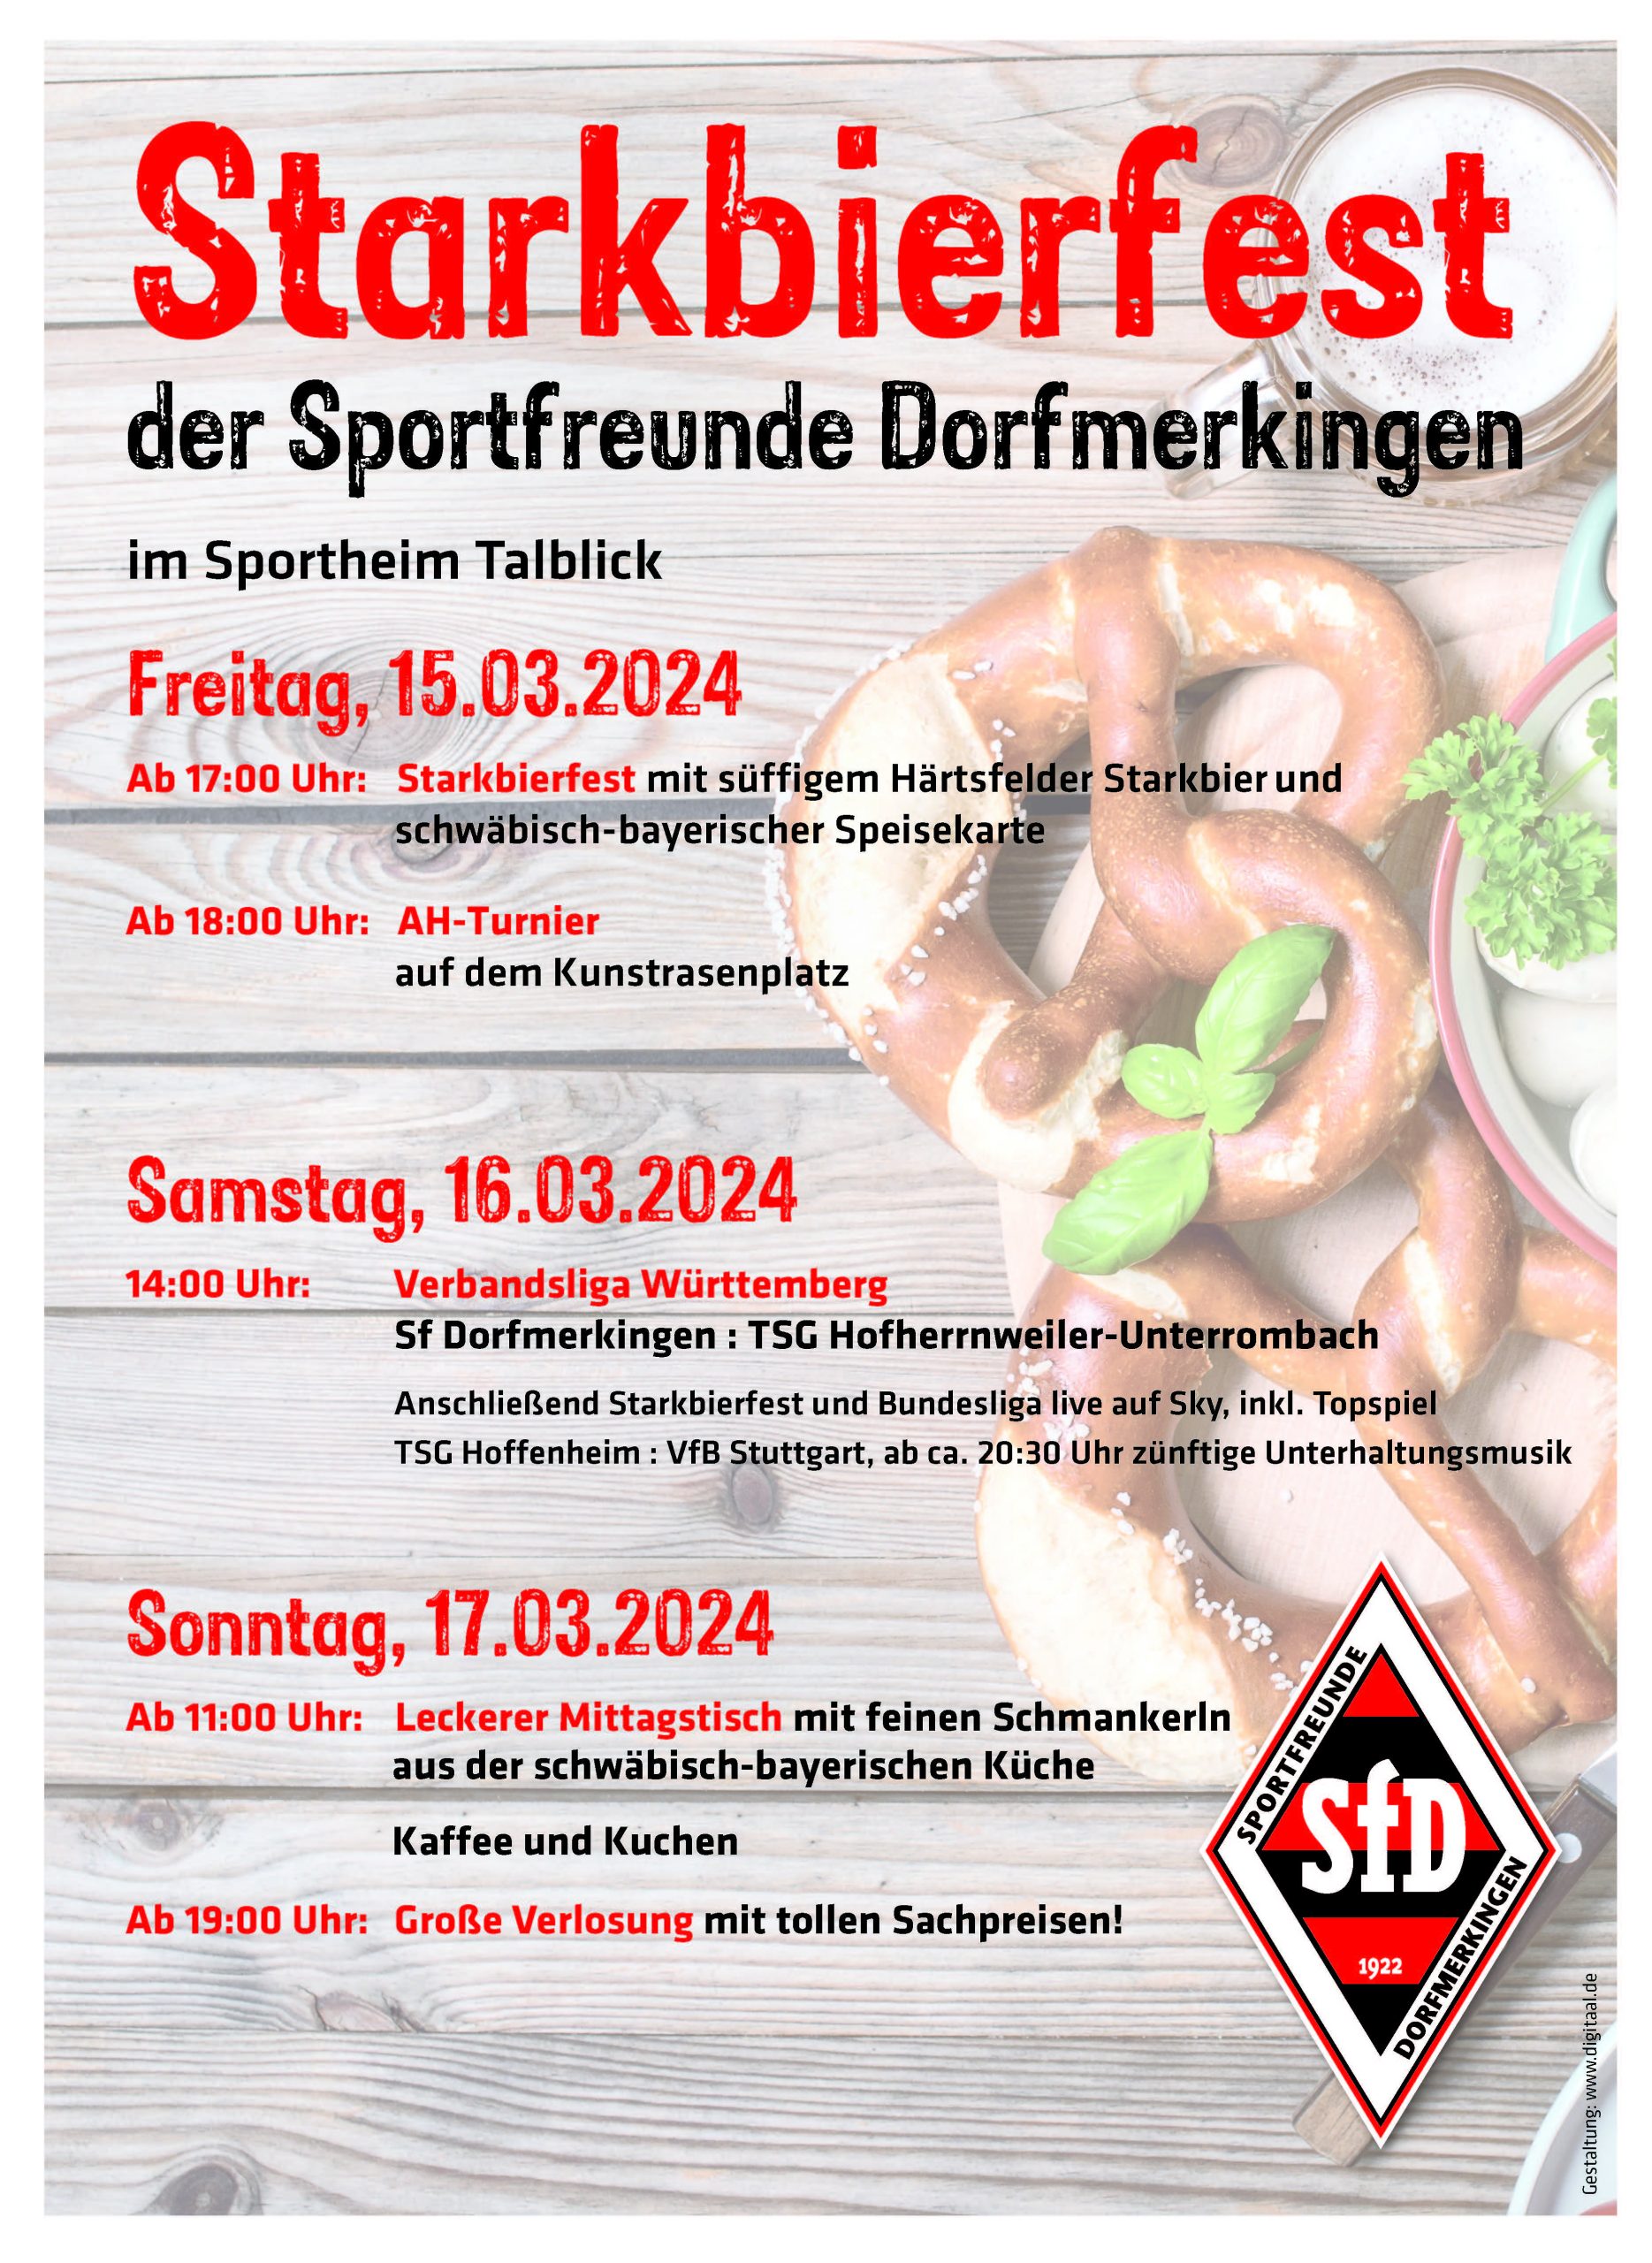 Vorschau: Traditionelles Starkbierfest der Sportfreunde vom 15. bis 17.03.2024